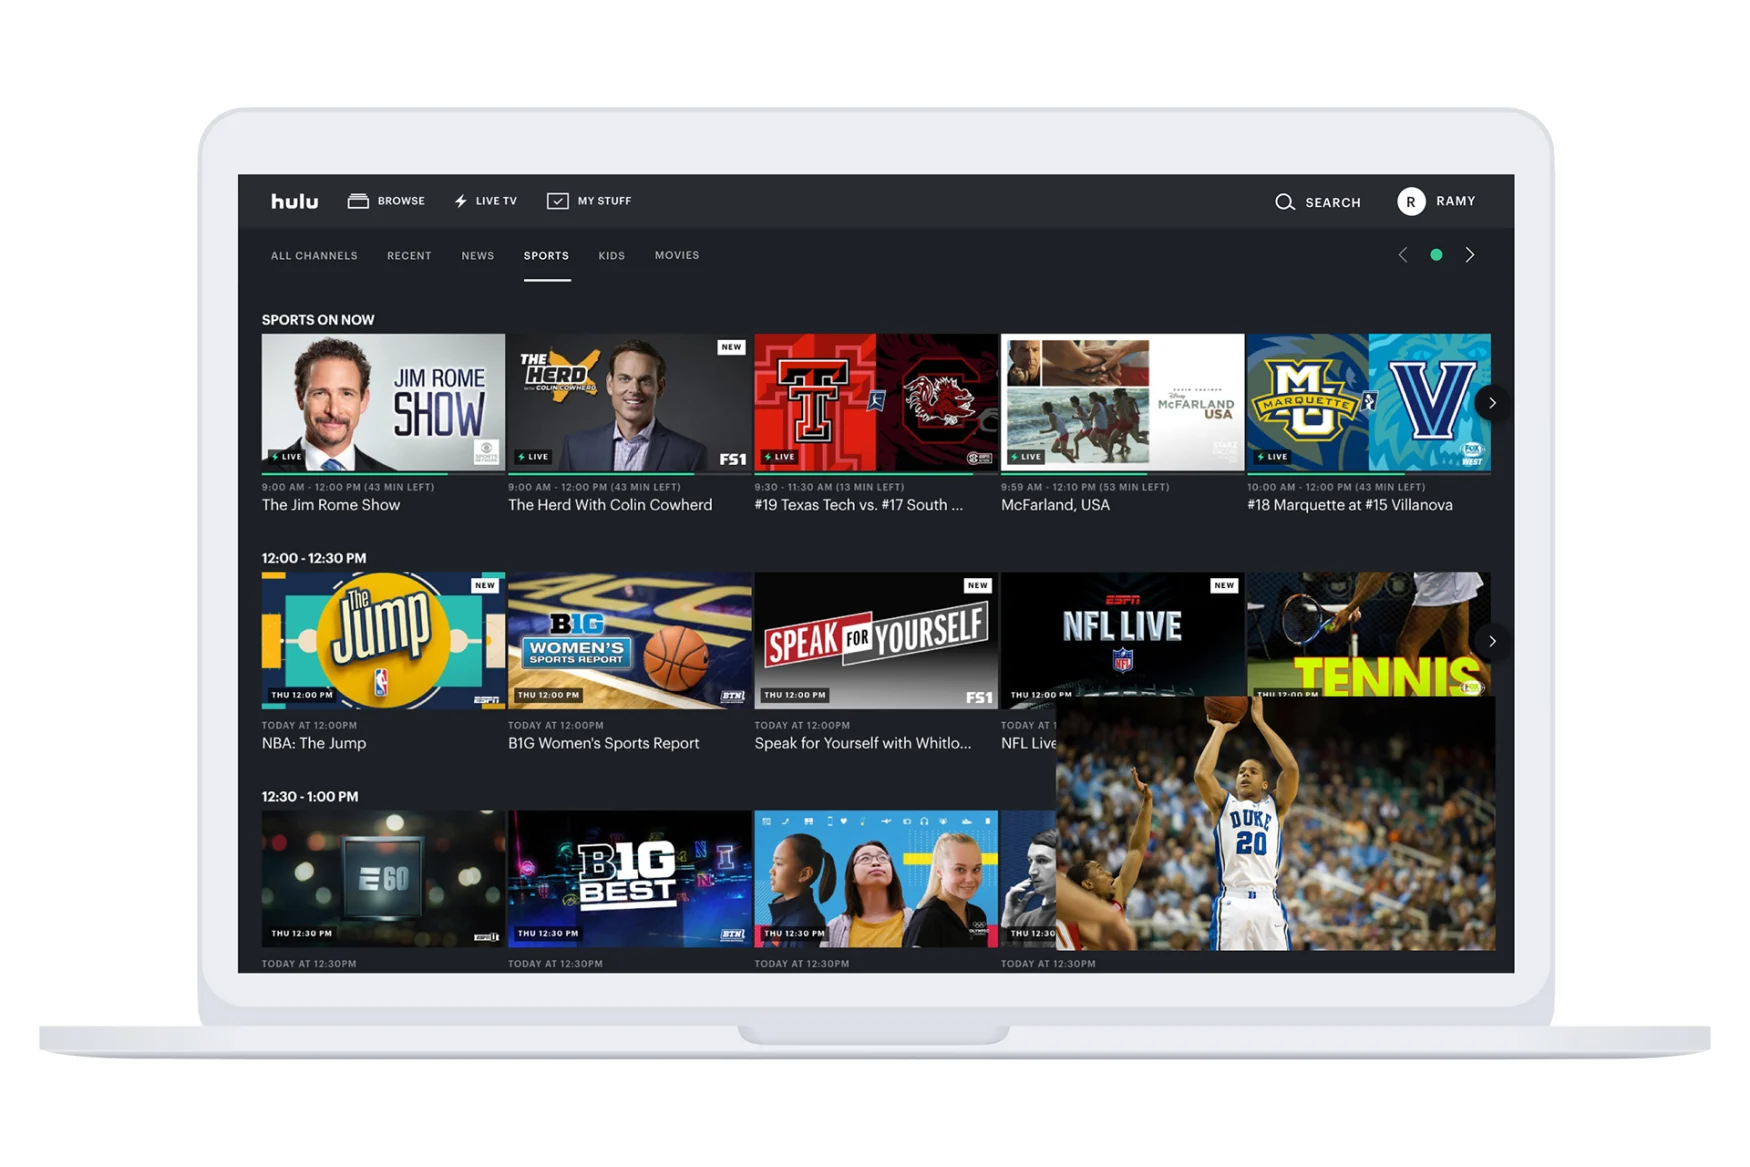 Hulu Live Guide featuring sports